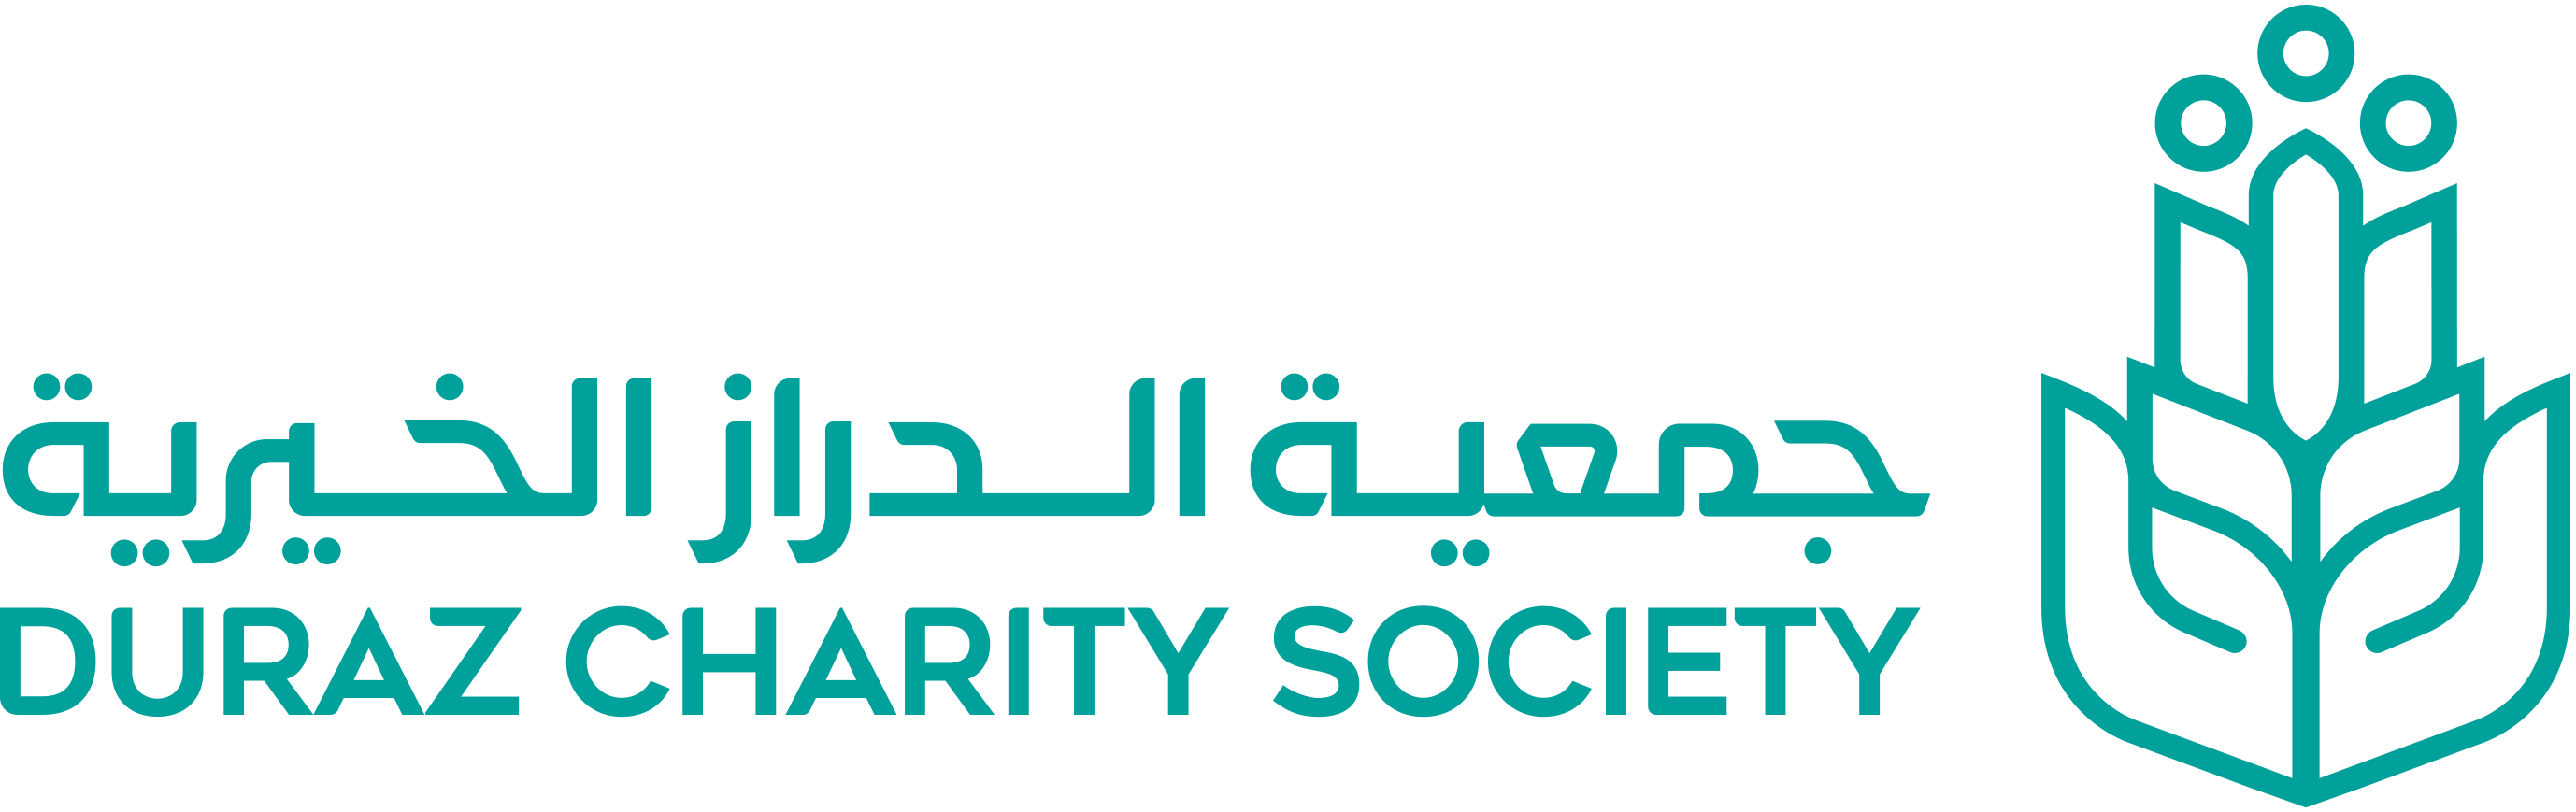 جمعية الدراز الخيرية